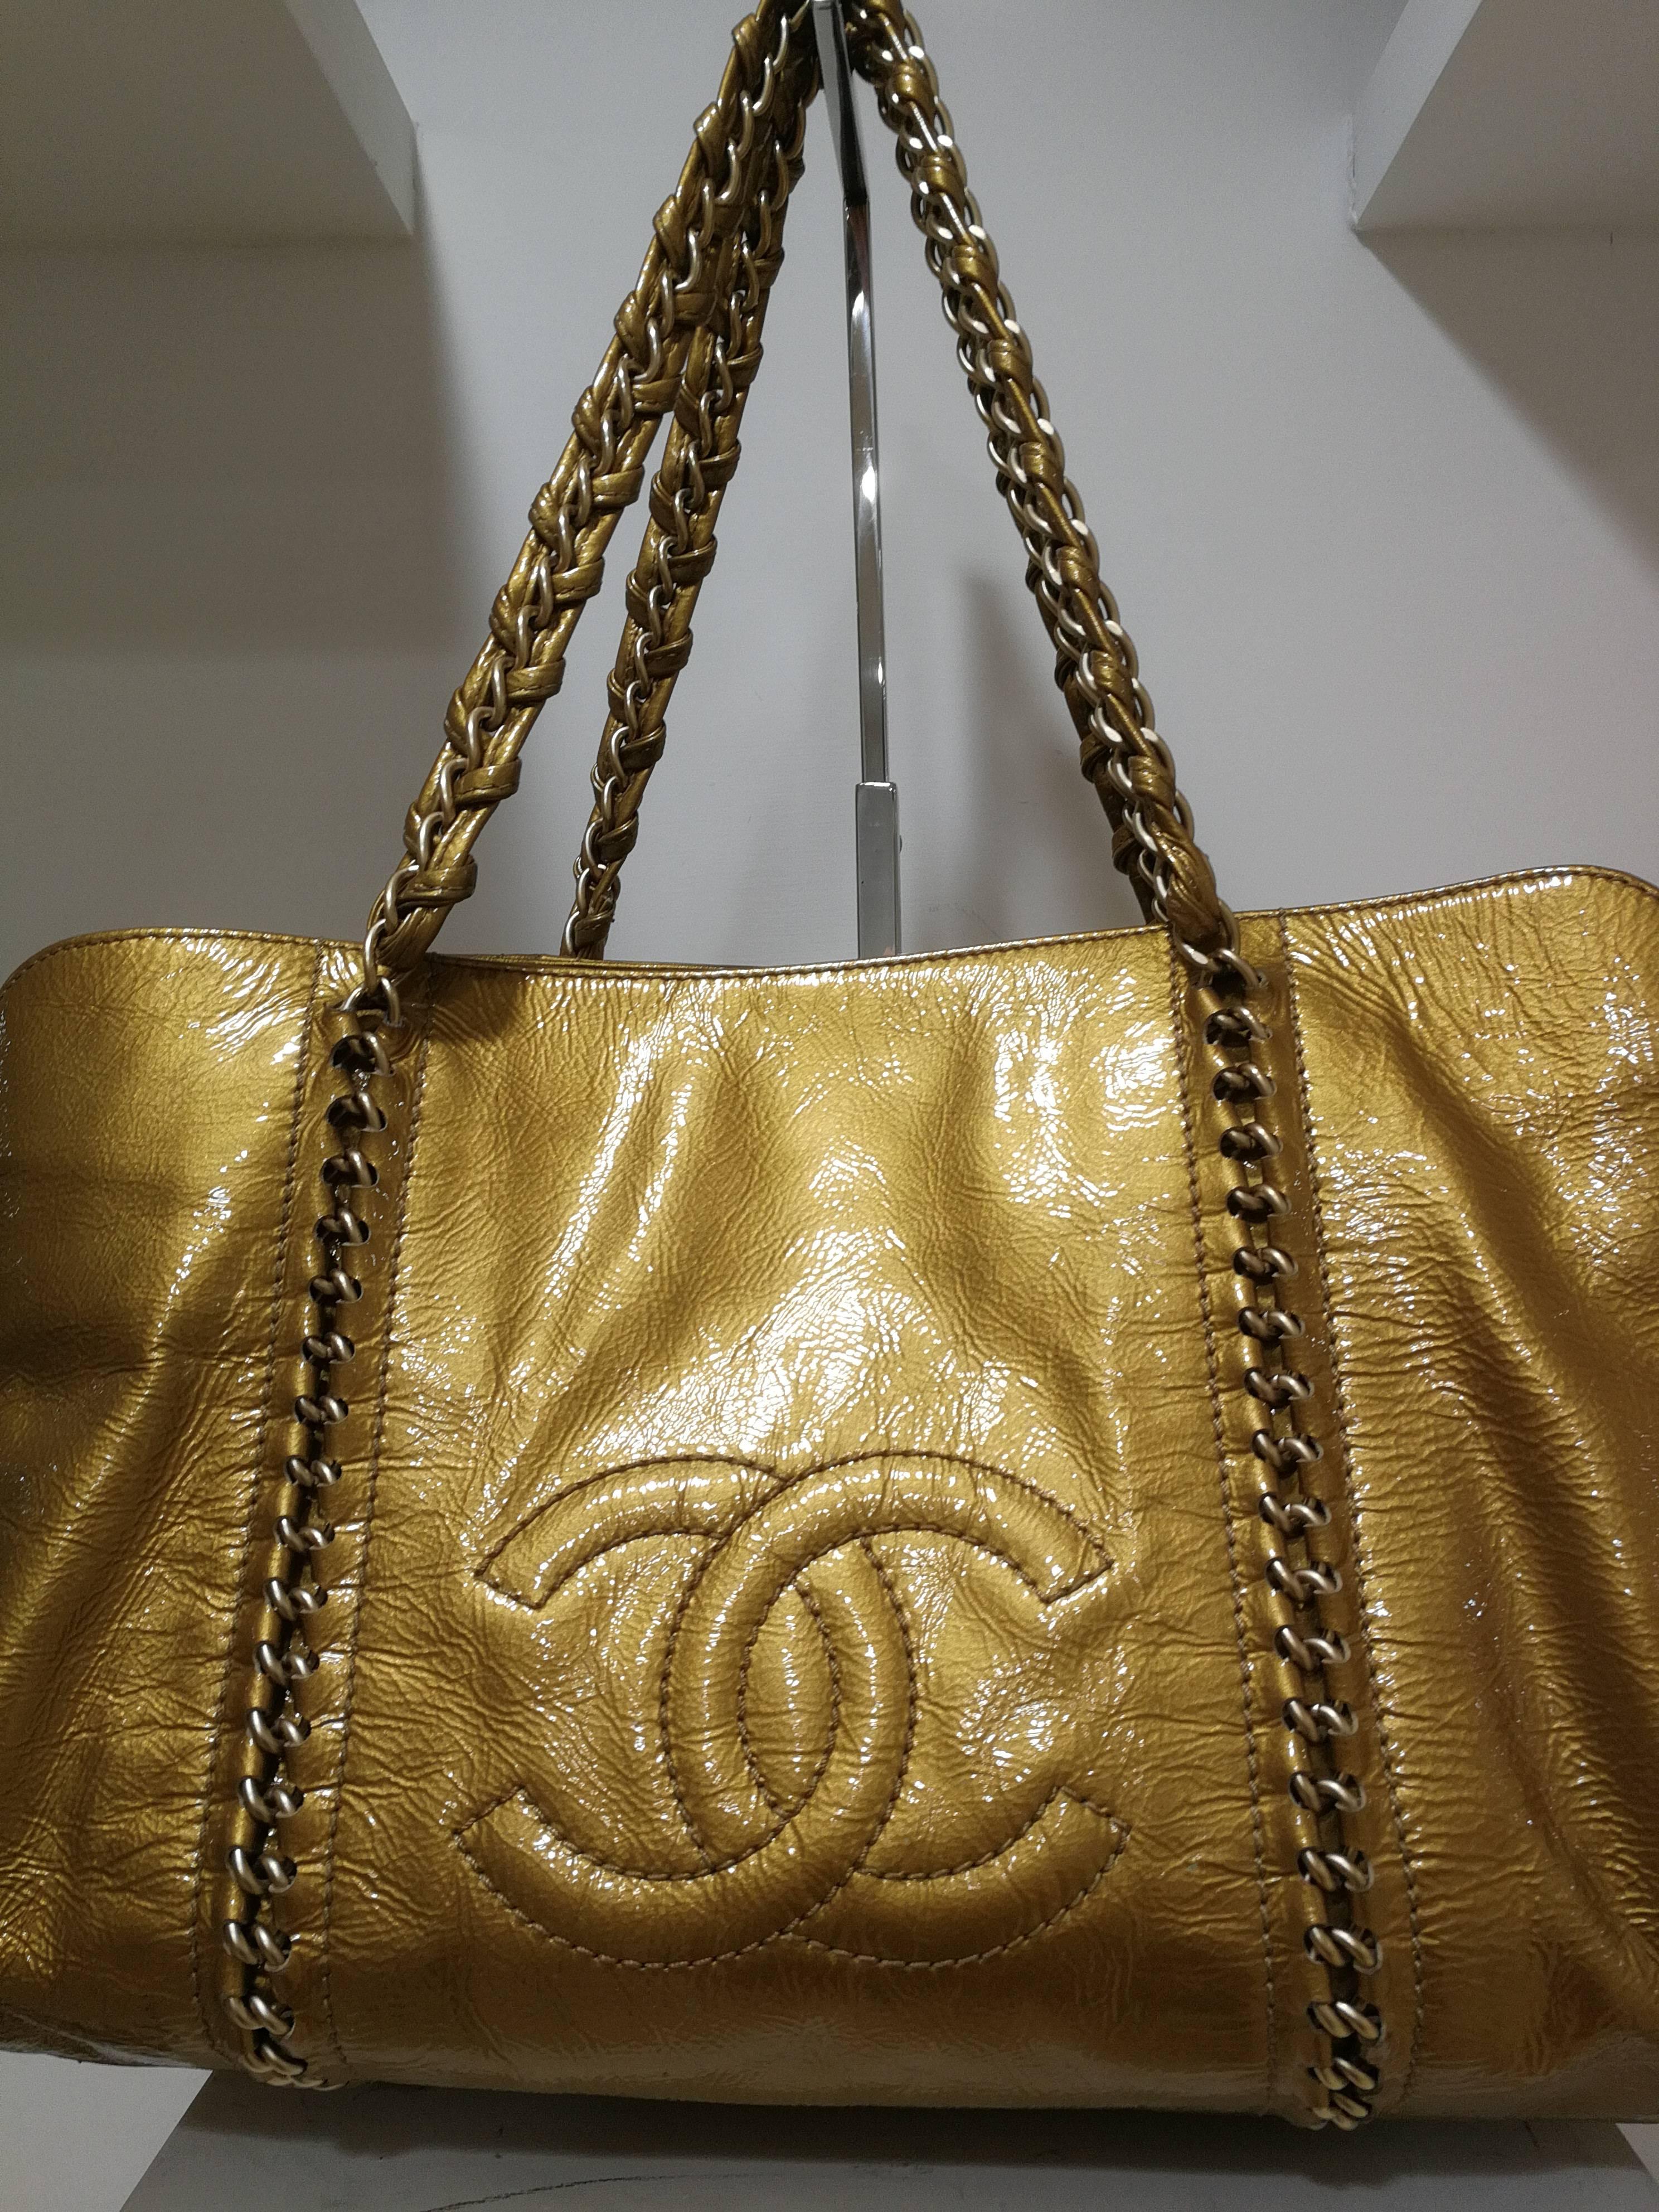 Brown Chanel gold patent leather shoulder bag